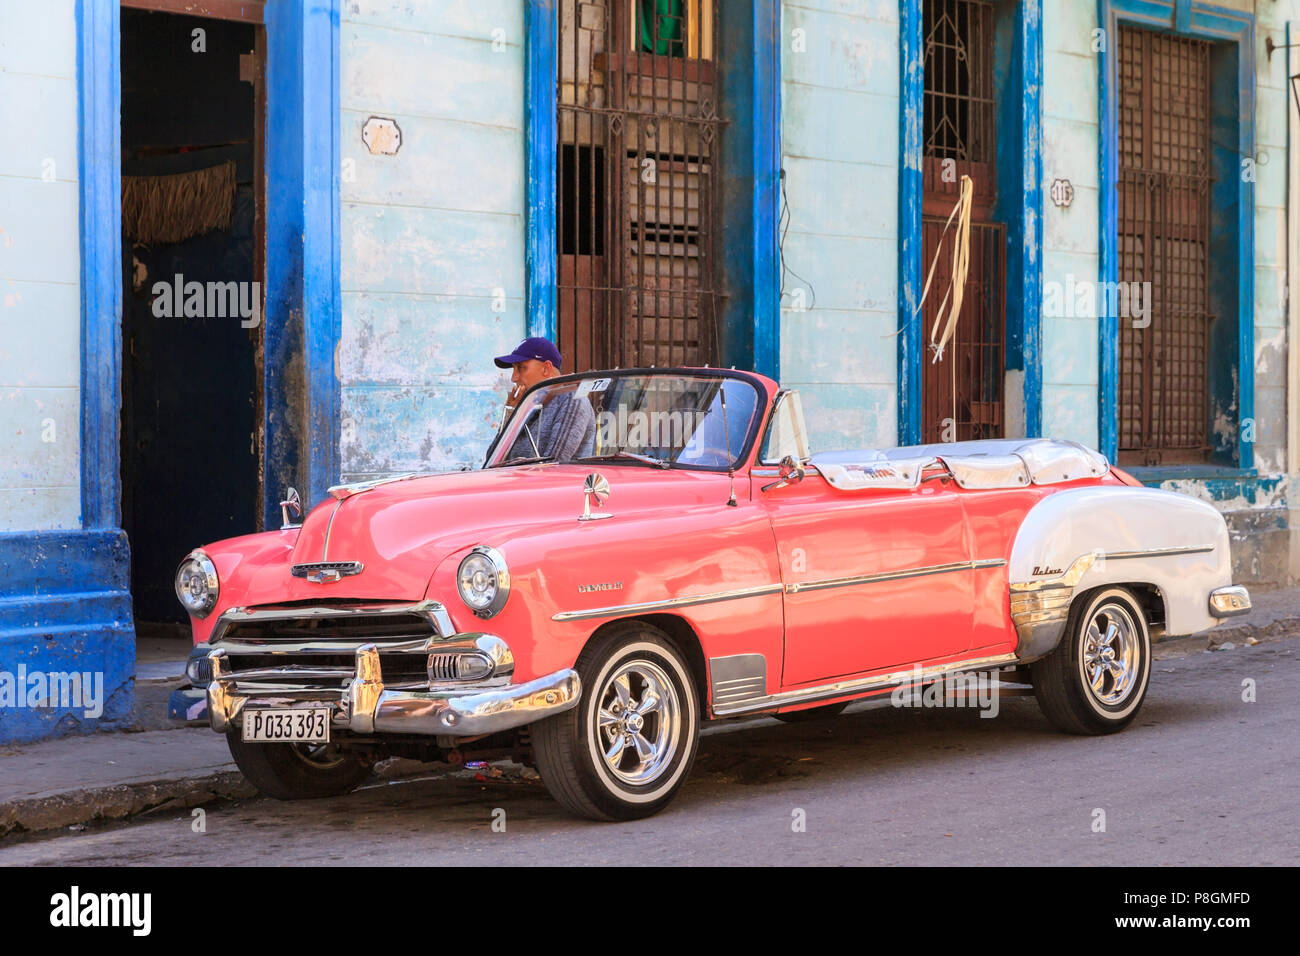 Pink convertible 1940s Chevrolet Deluxe, street scene in Vedado, Havana, Cuba Stock Photo